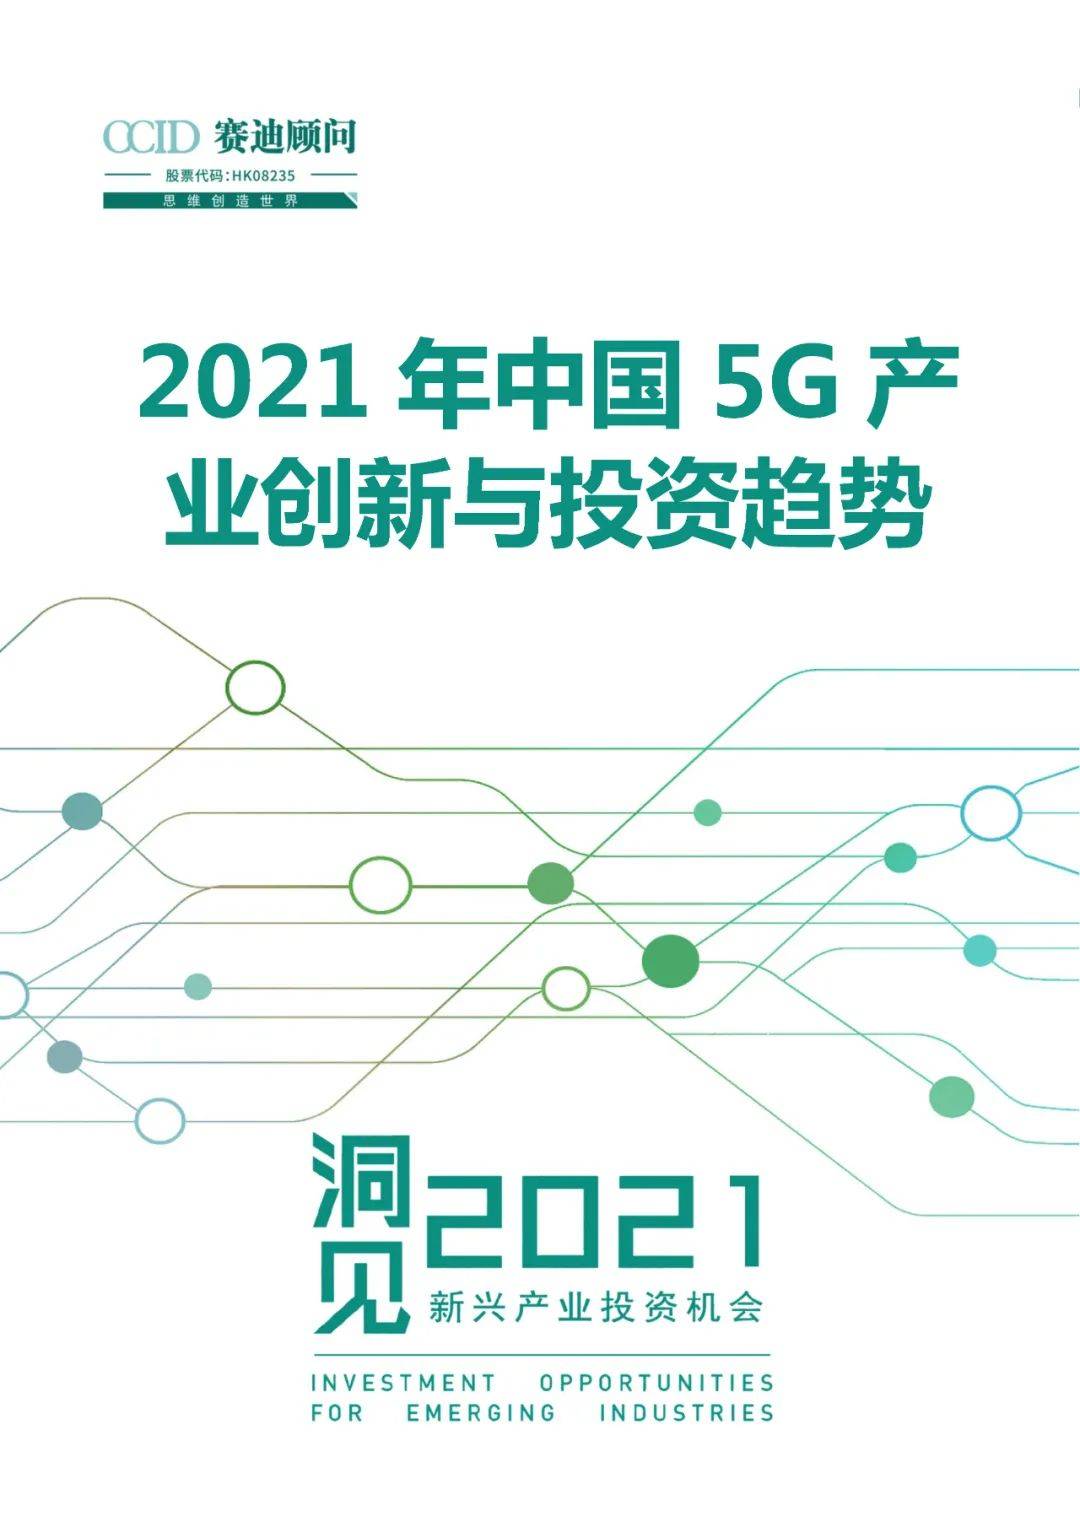 产业|赛迪顾问 | 2021年中国5G产业创新与投资趋势